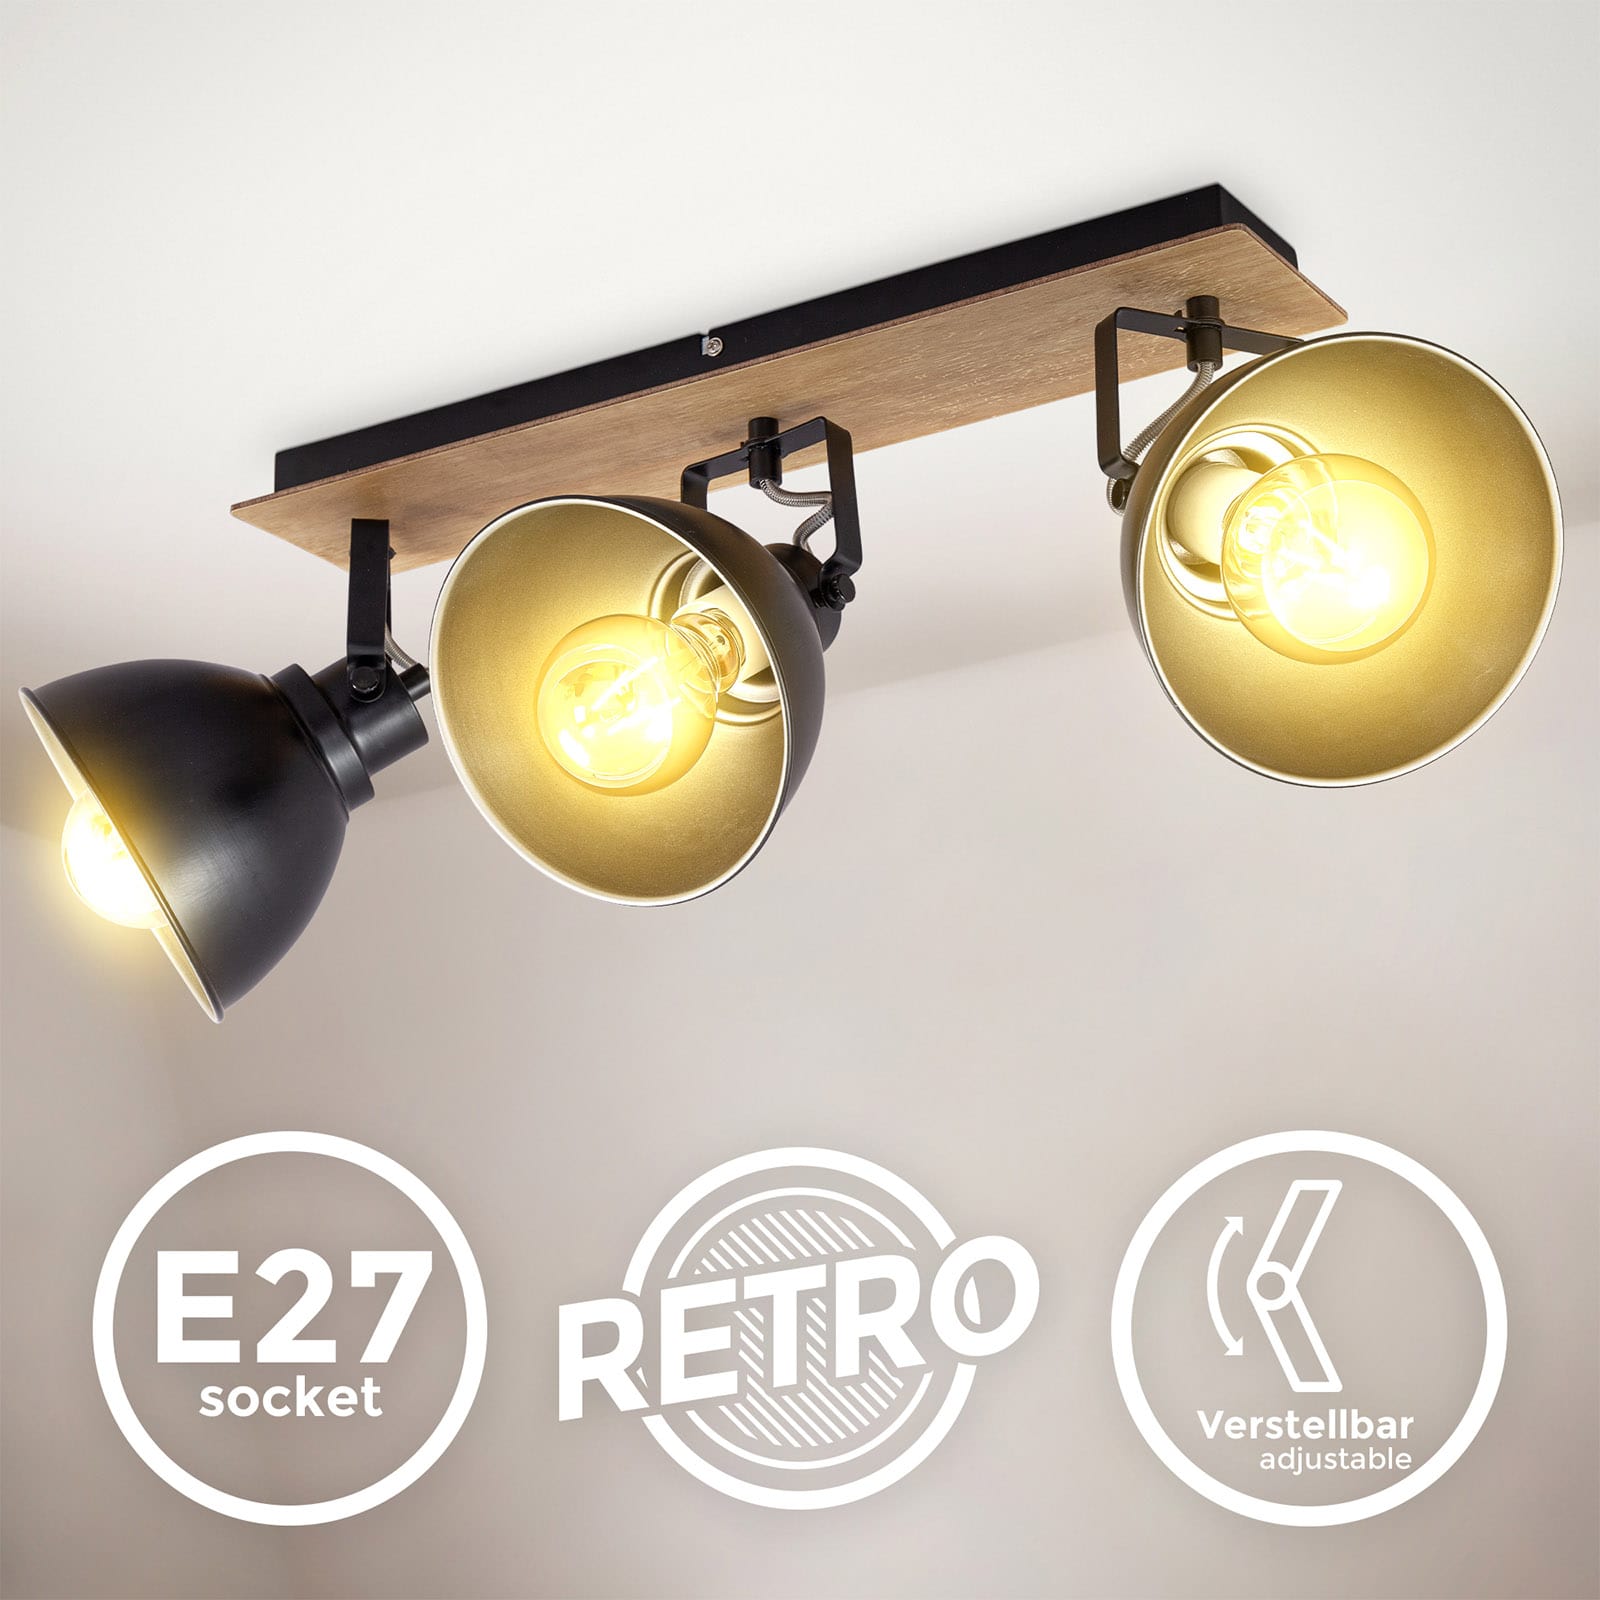 Retro-Deckenleuchte 56x16cm - 3-flammig - Deckenlampe industrial Design Metall Holz Fassung E27 LED / Halogen max 60W Spots drehbar schwenkbar | schwarz gold - 3